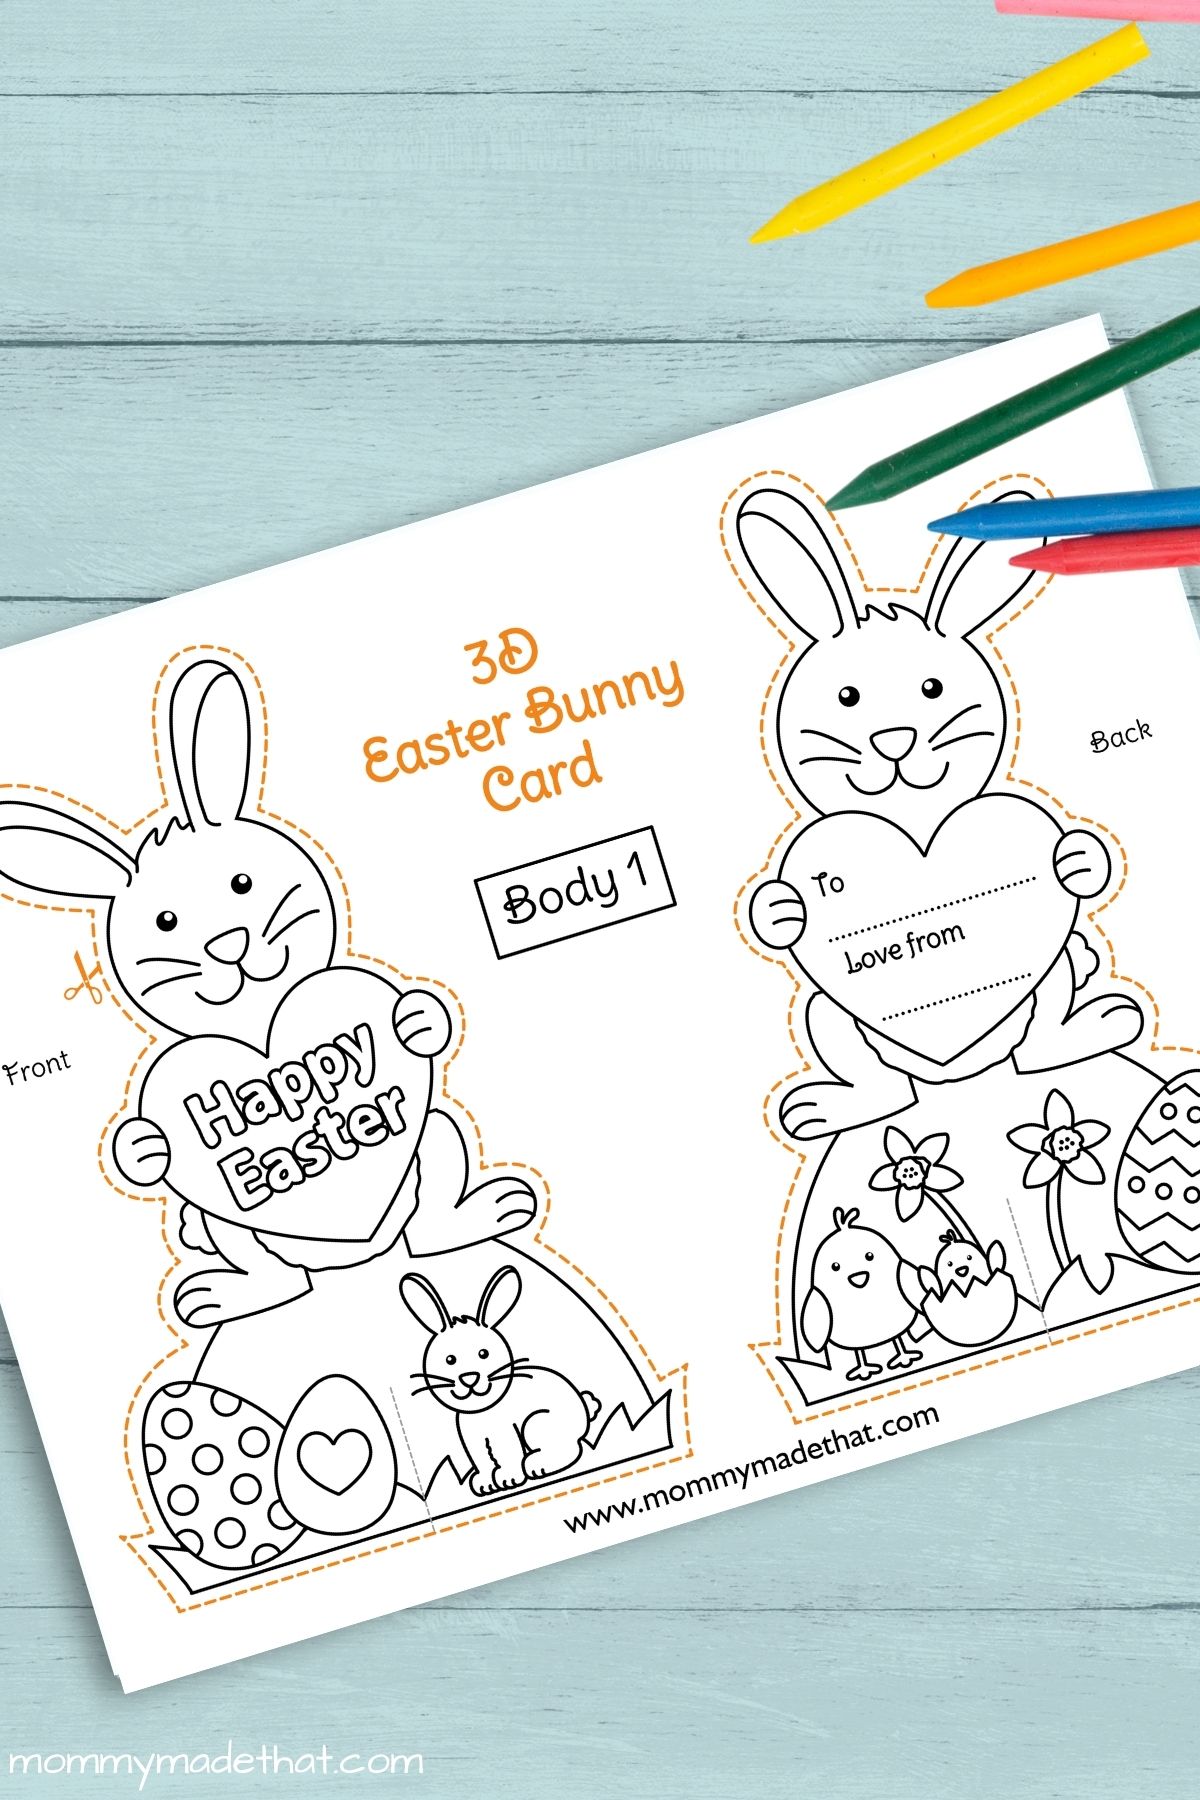 Easter bunny card printable